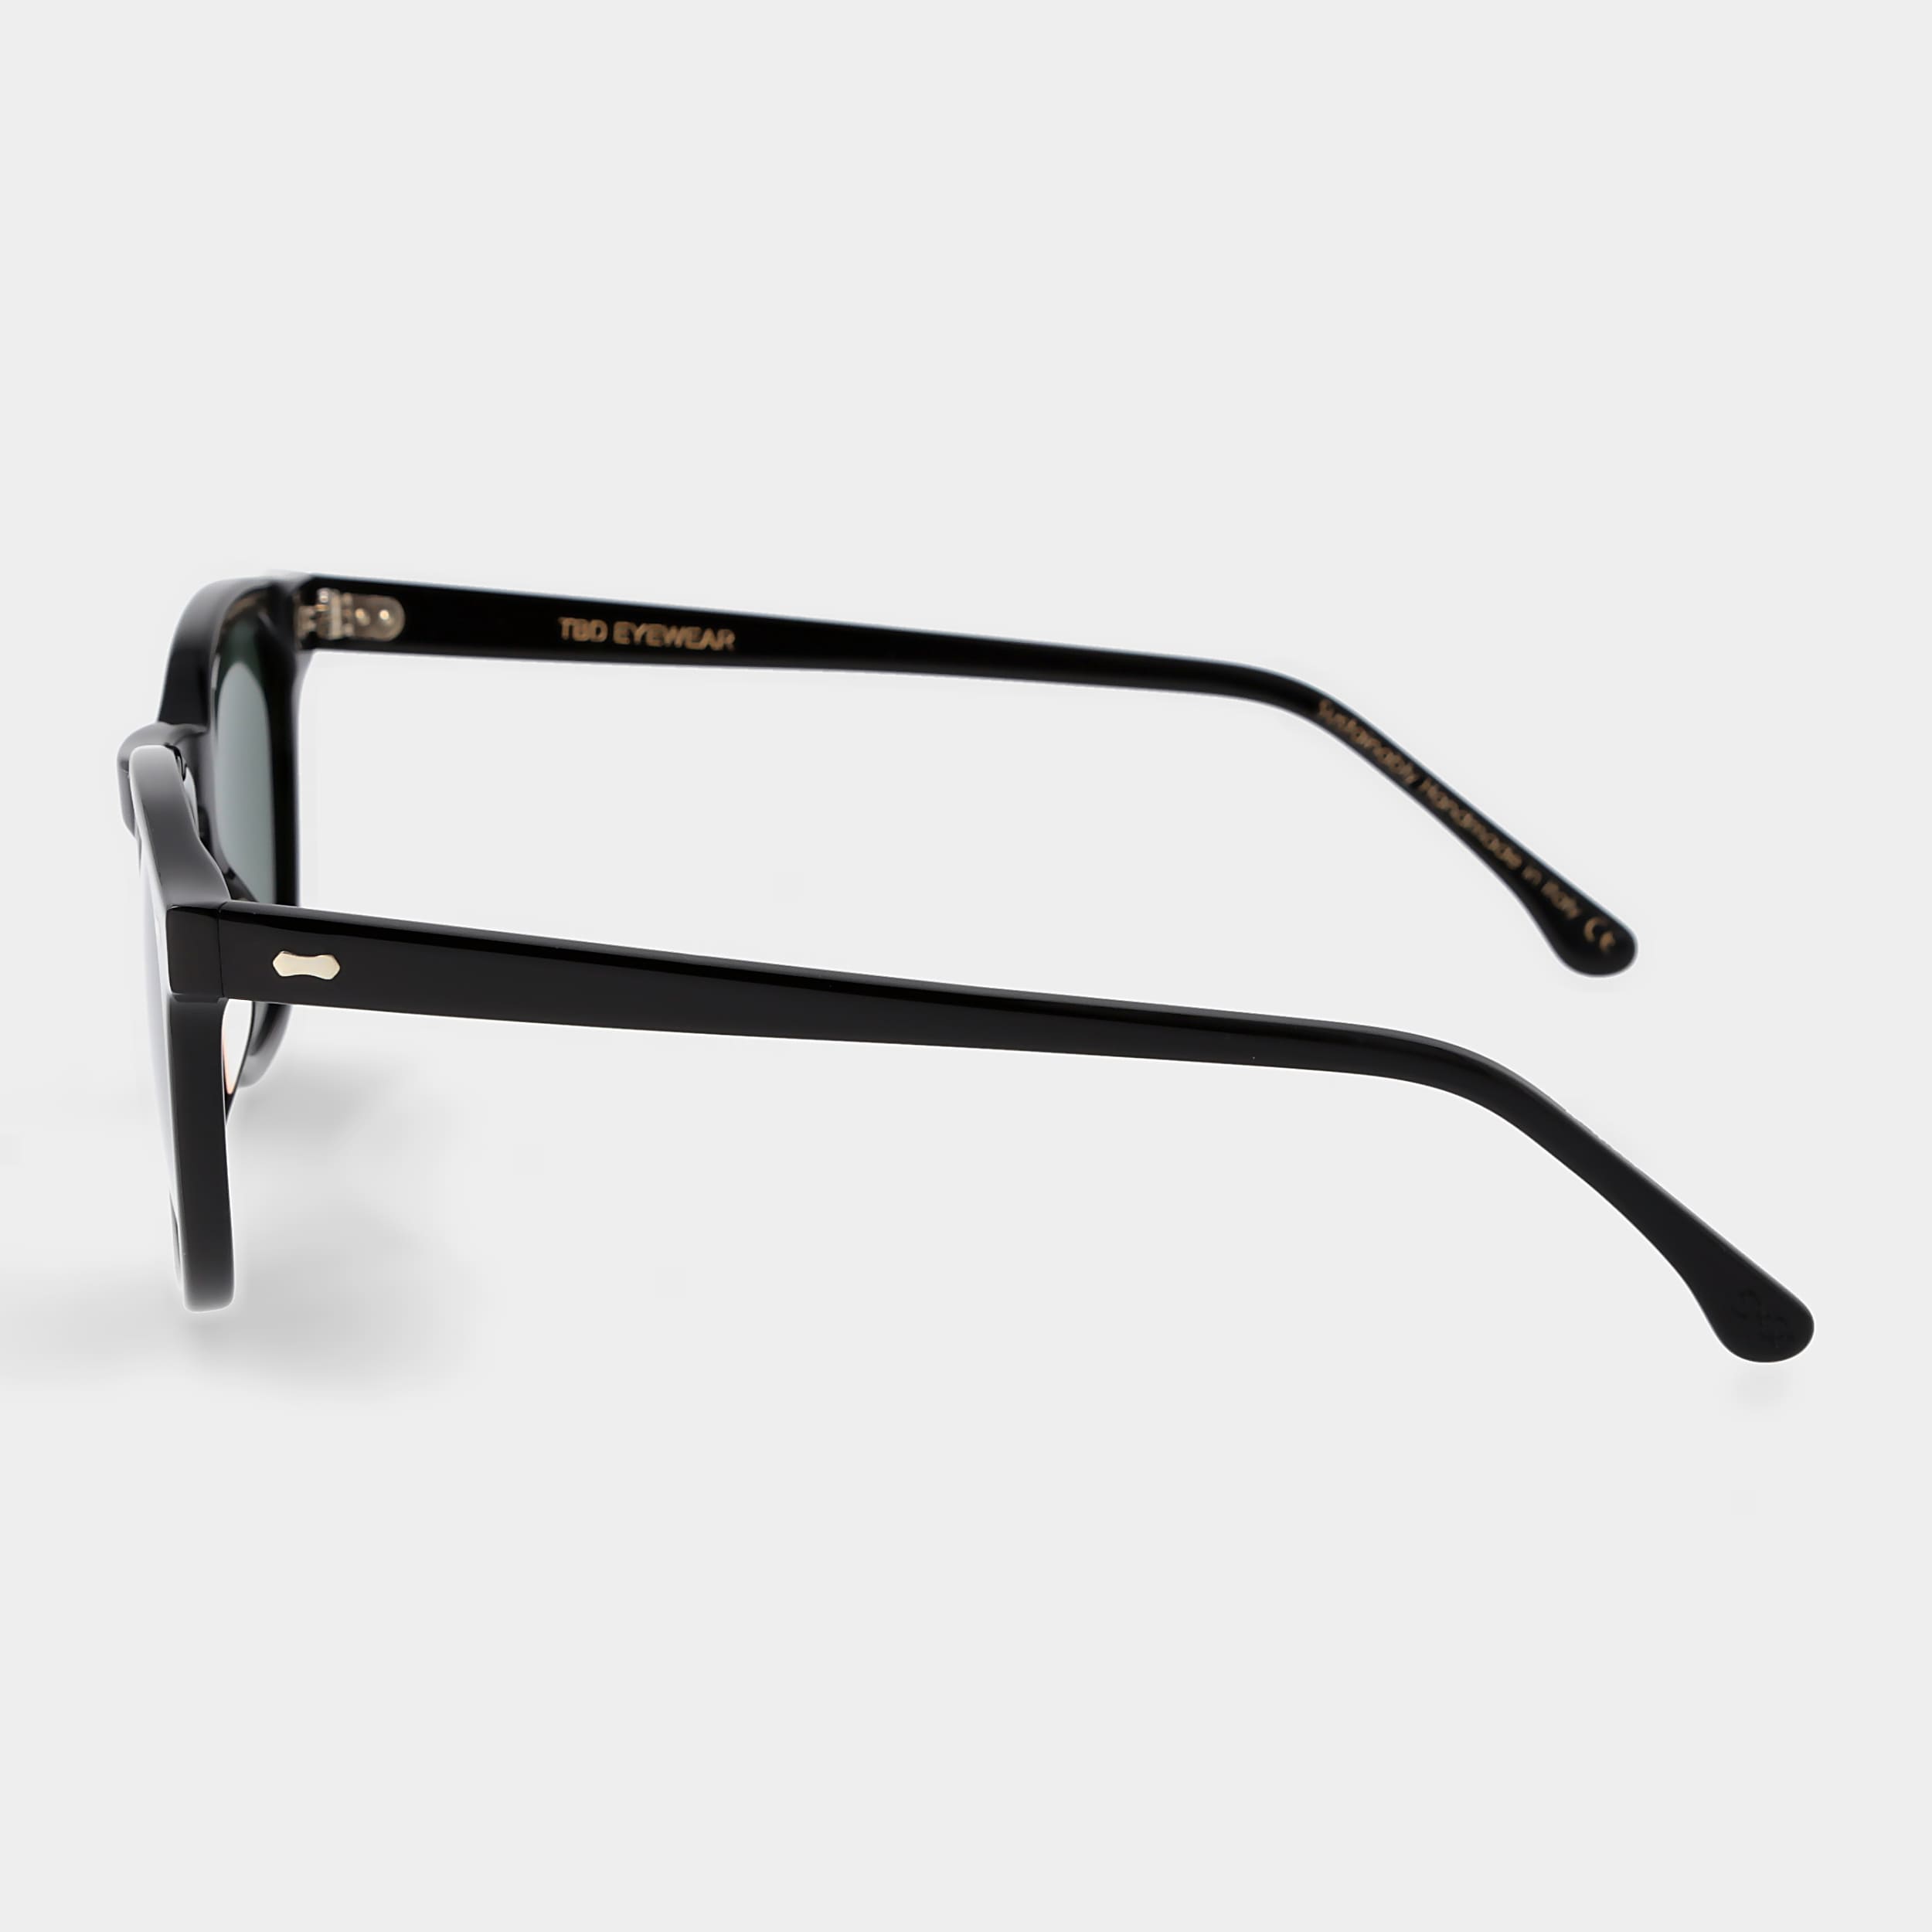 sunglasses-twill-eco-balck-polarized-sustainable-tbd-eyewear-lateral